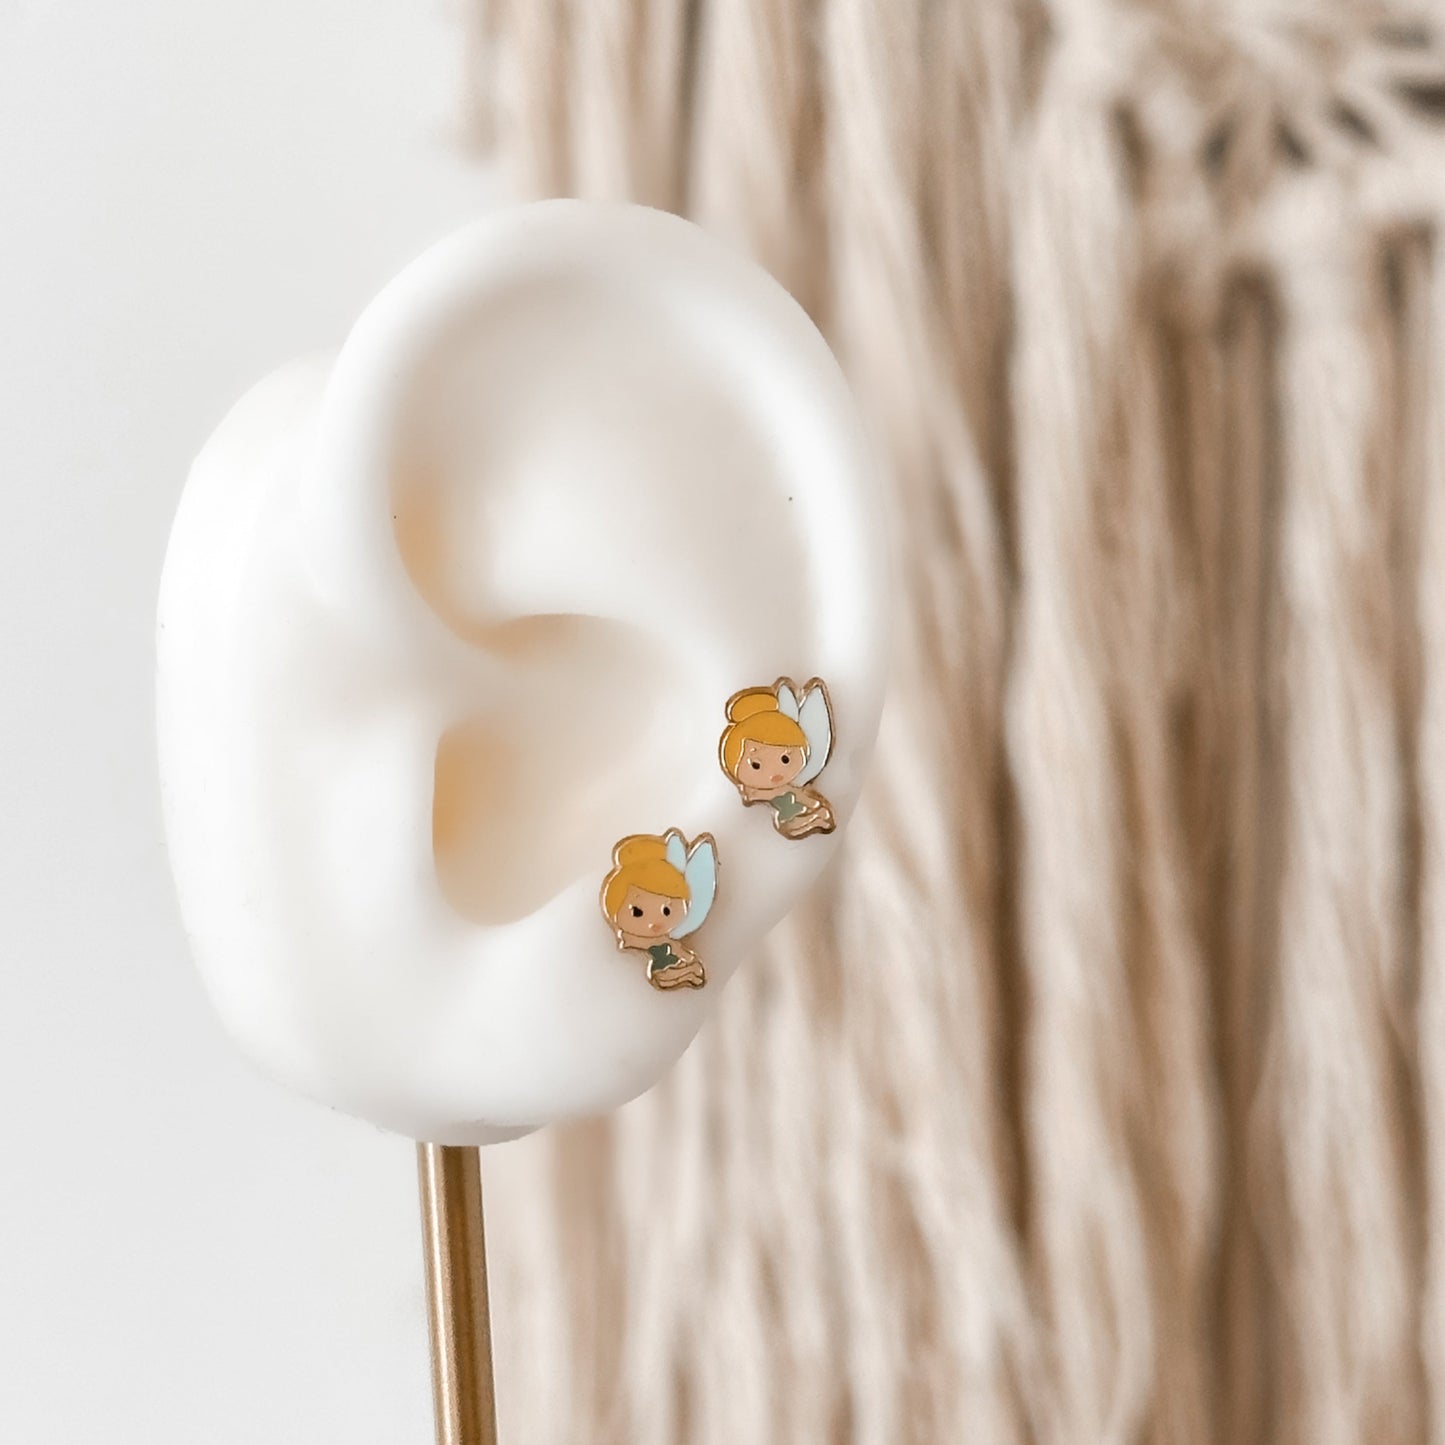 Tinkerbell Inspired Earrings 10K Gold